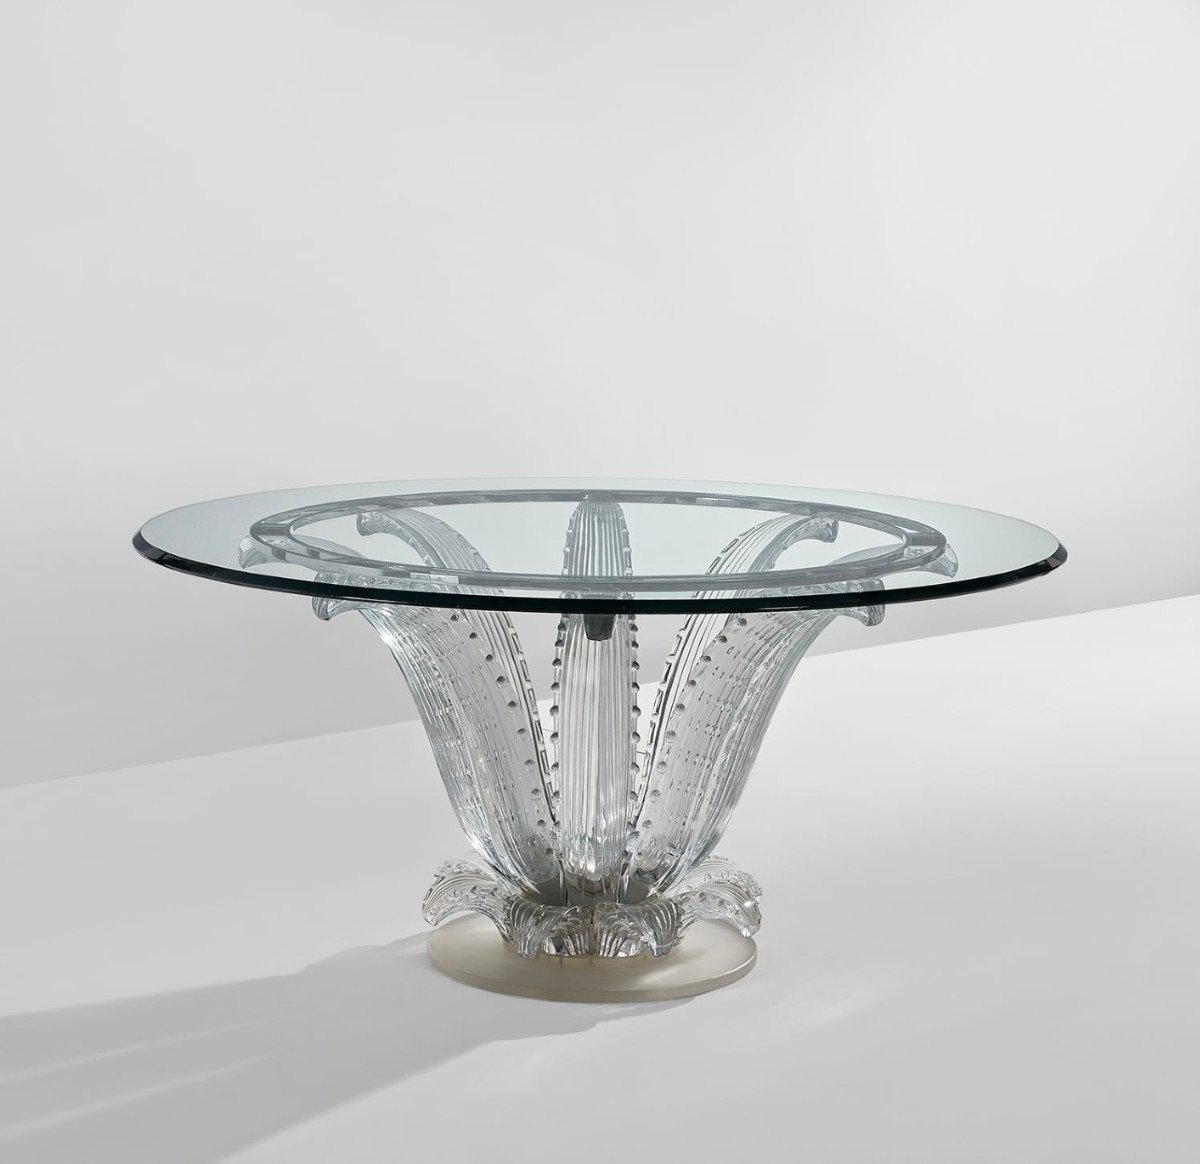 Marc Lalique "cactus" Table